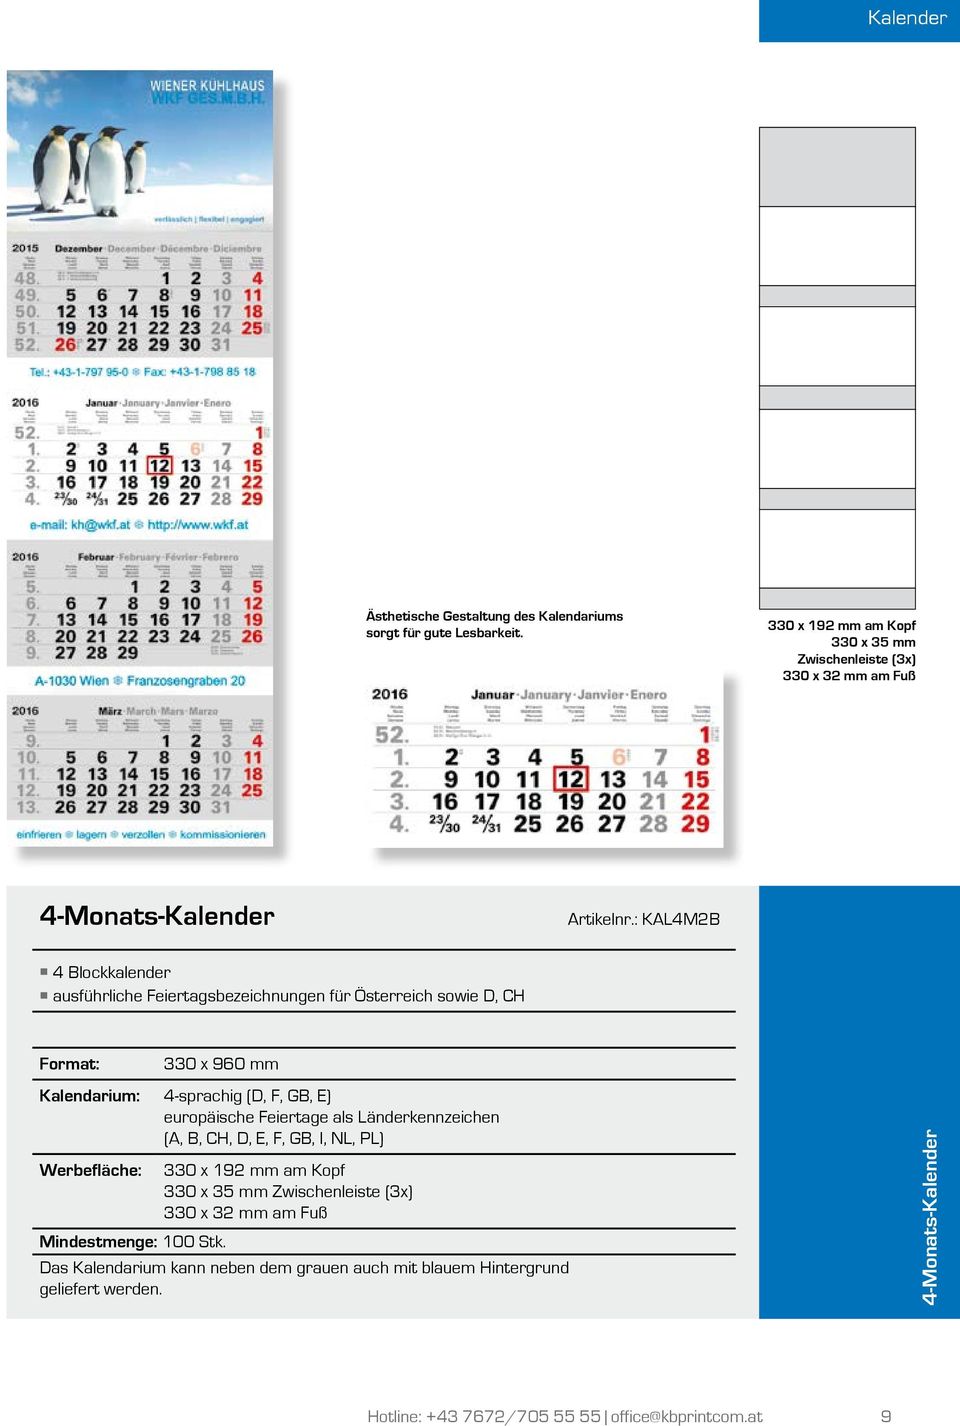 : KAL4M2B 4 Blockkalender ausführliche Feiertagsbezeichnungen für Österreich sowie D, CH 330 x 960 mm Kalendarium: 4-sprachig (D, F, GB, E) europäische